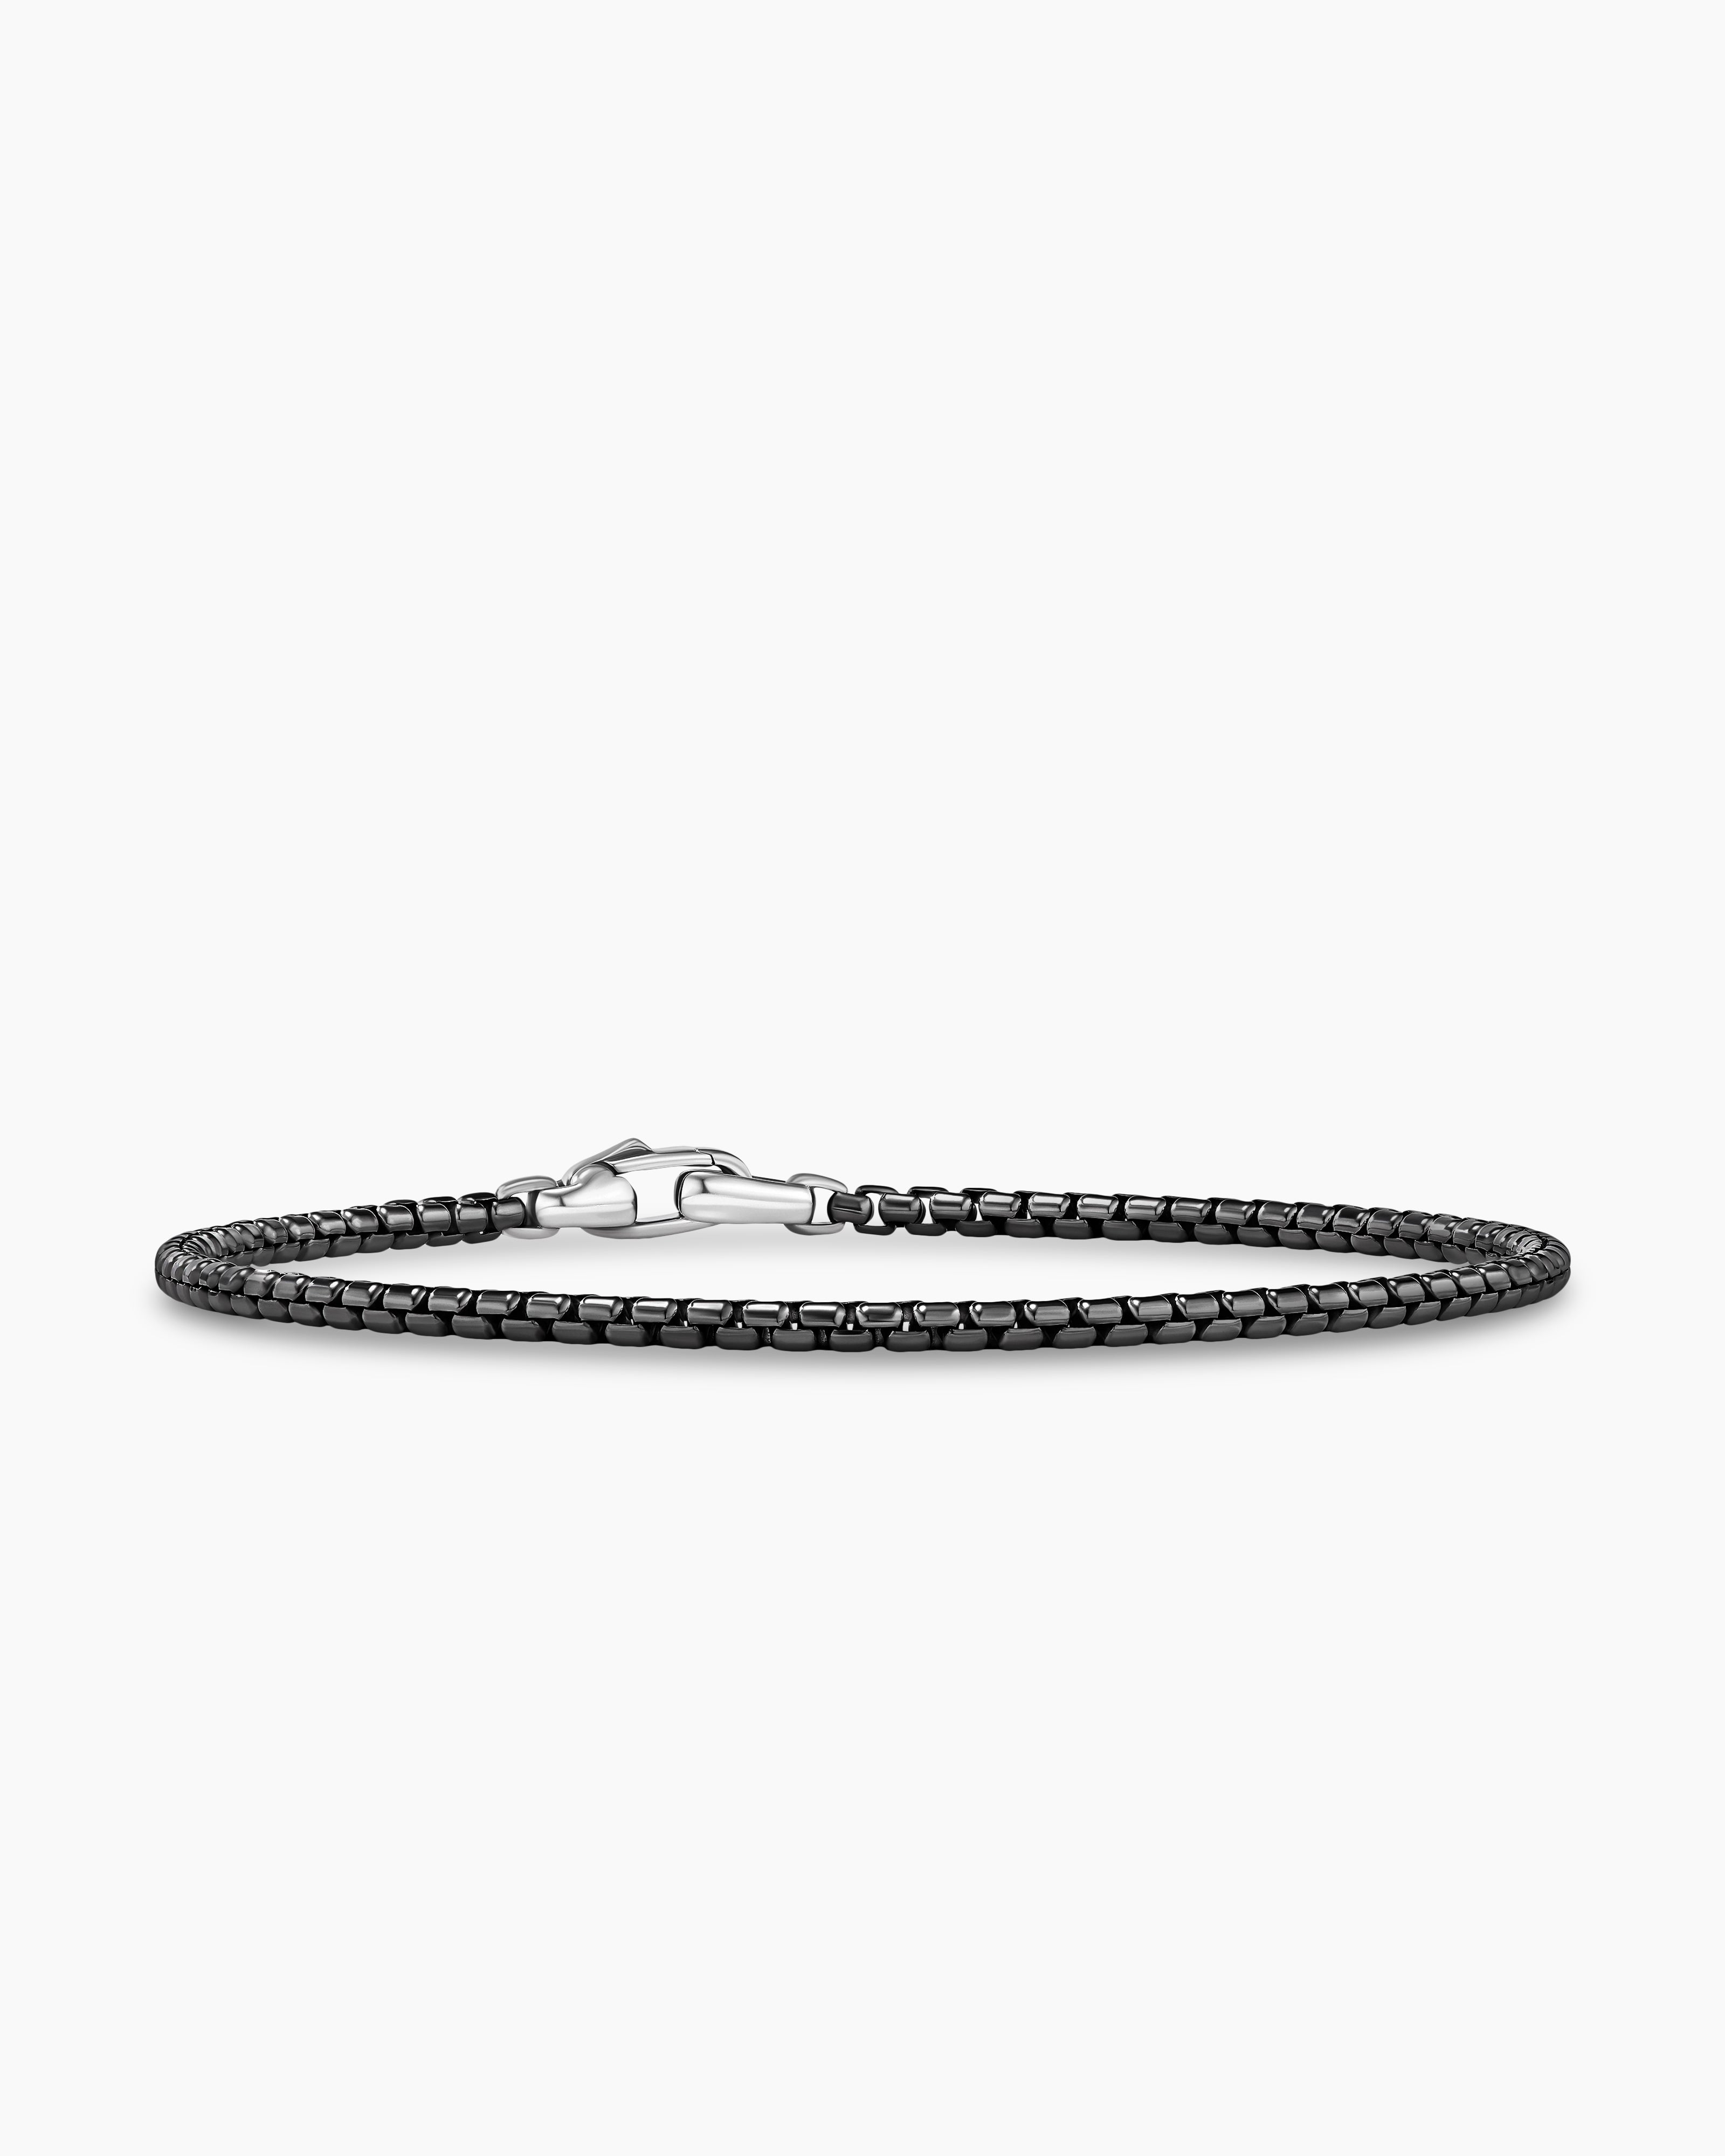 David Yurman Men's Double Box Chain Bracelet - Silver - Size M